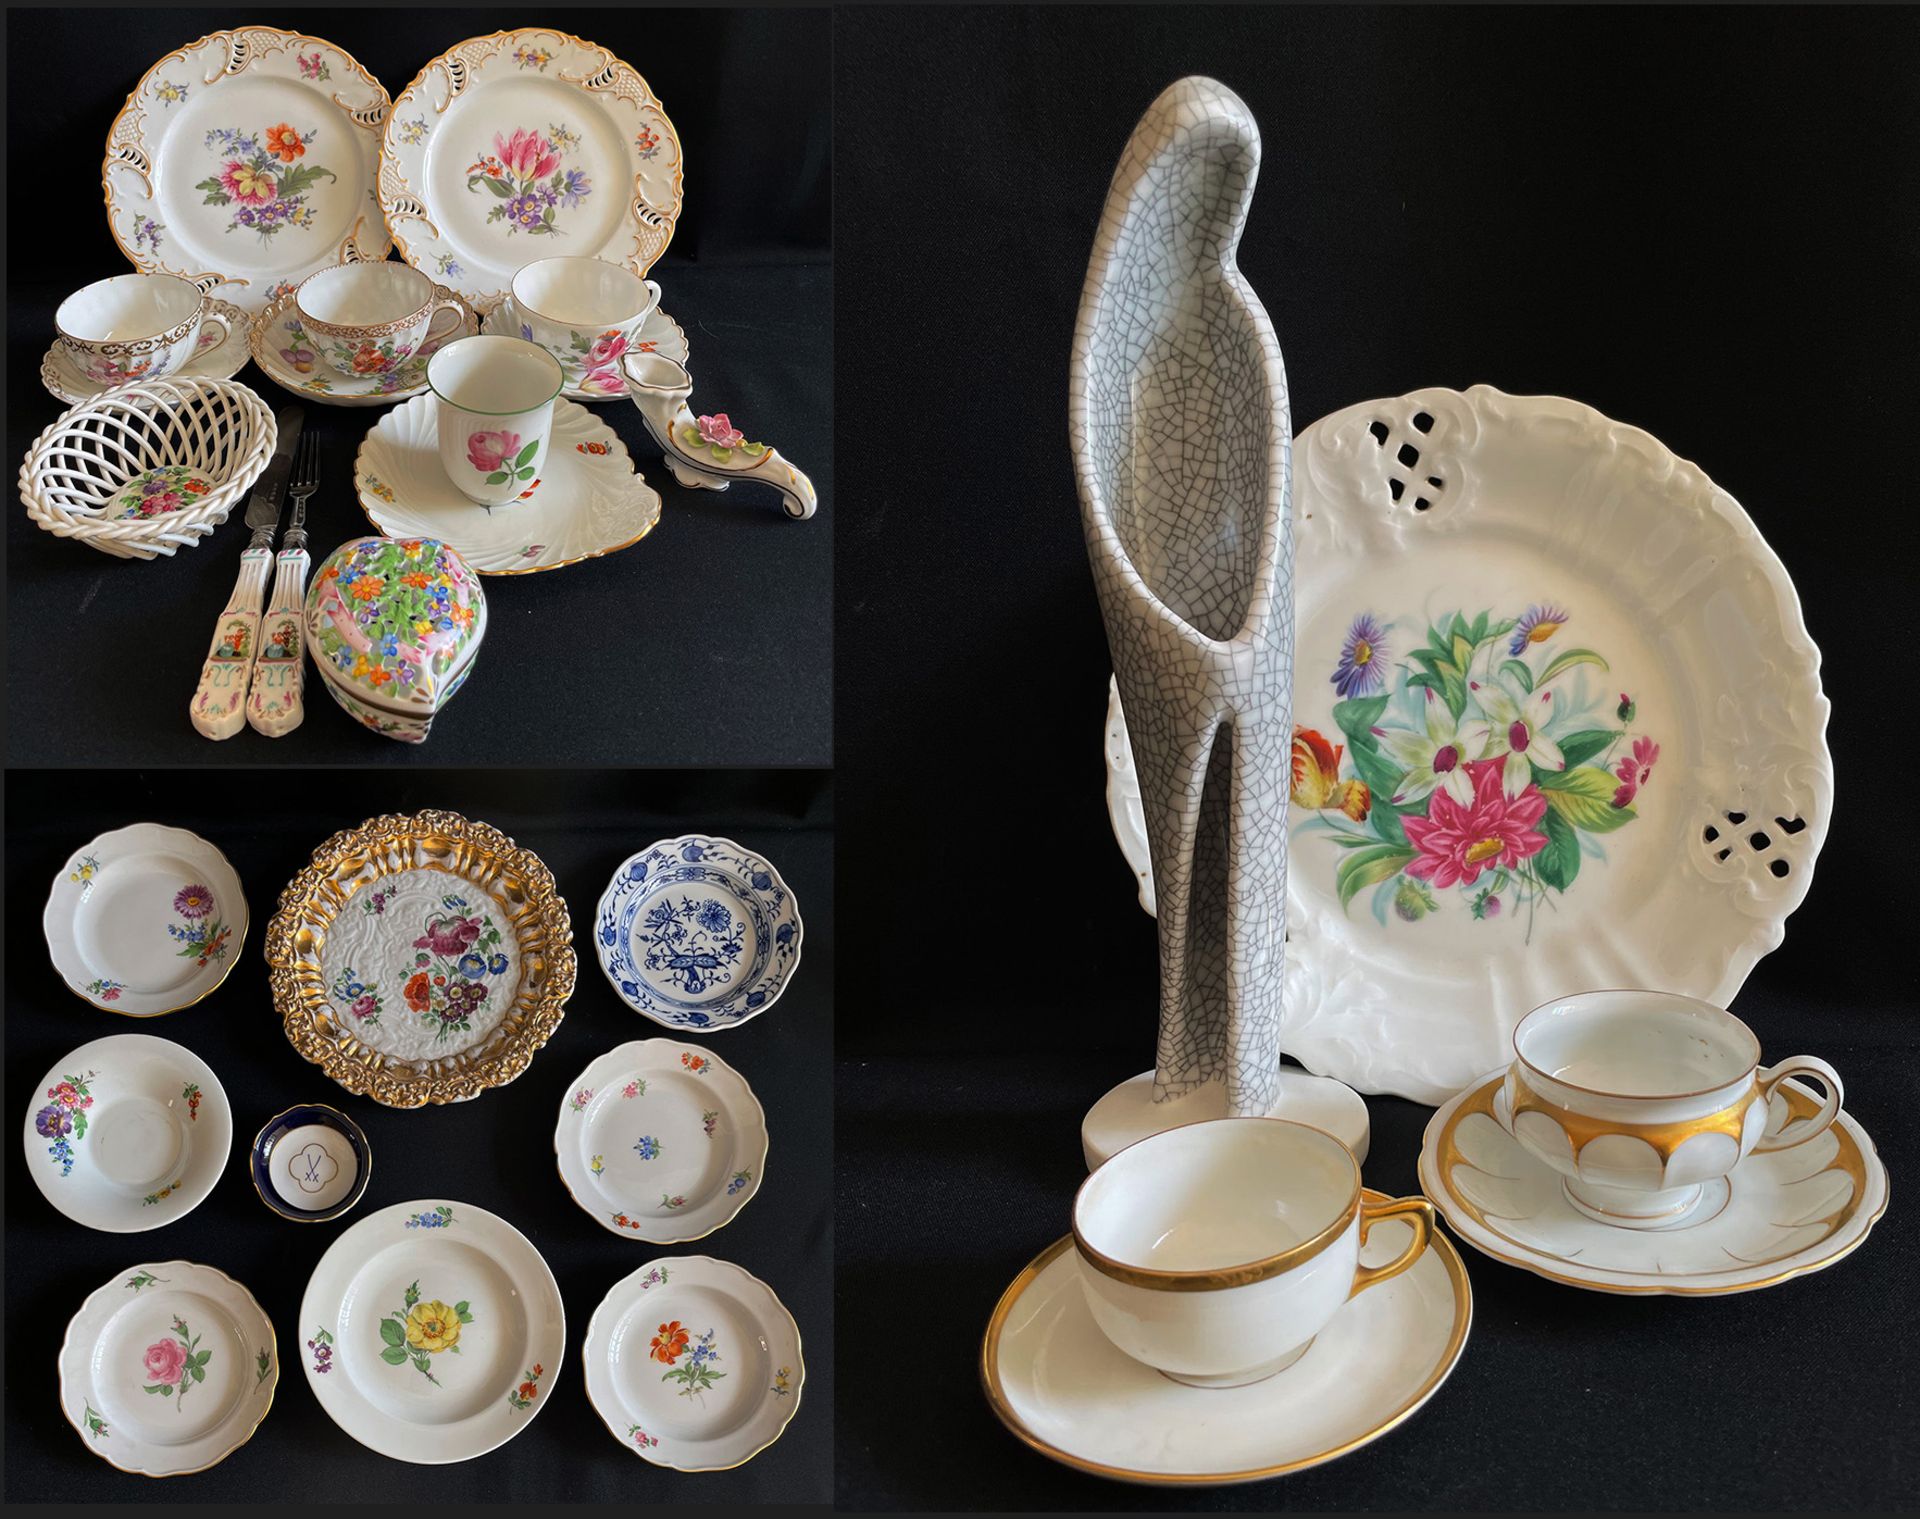 Großes Konvolut Porzellan, Sammlungsauflösung: Nymphenburg, 2 Durchbruchteller mit Blumendekor sowie